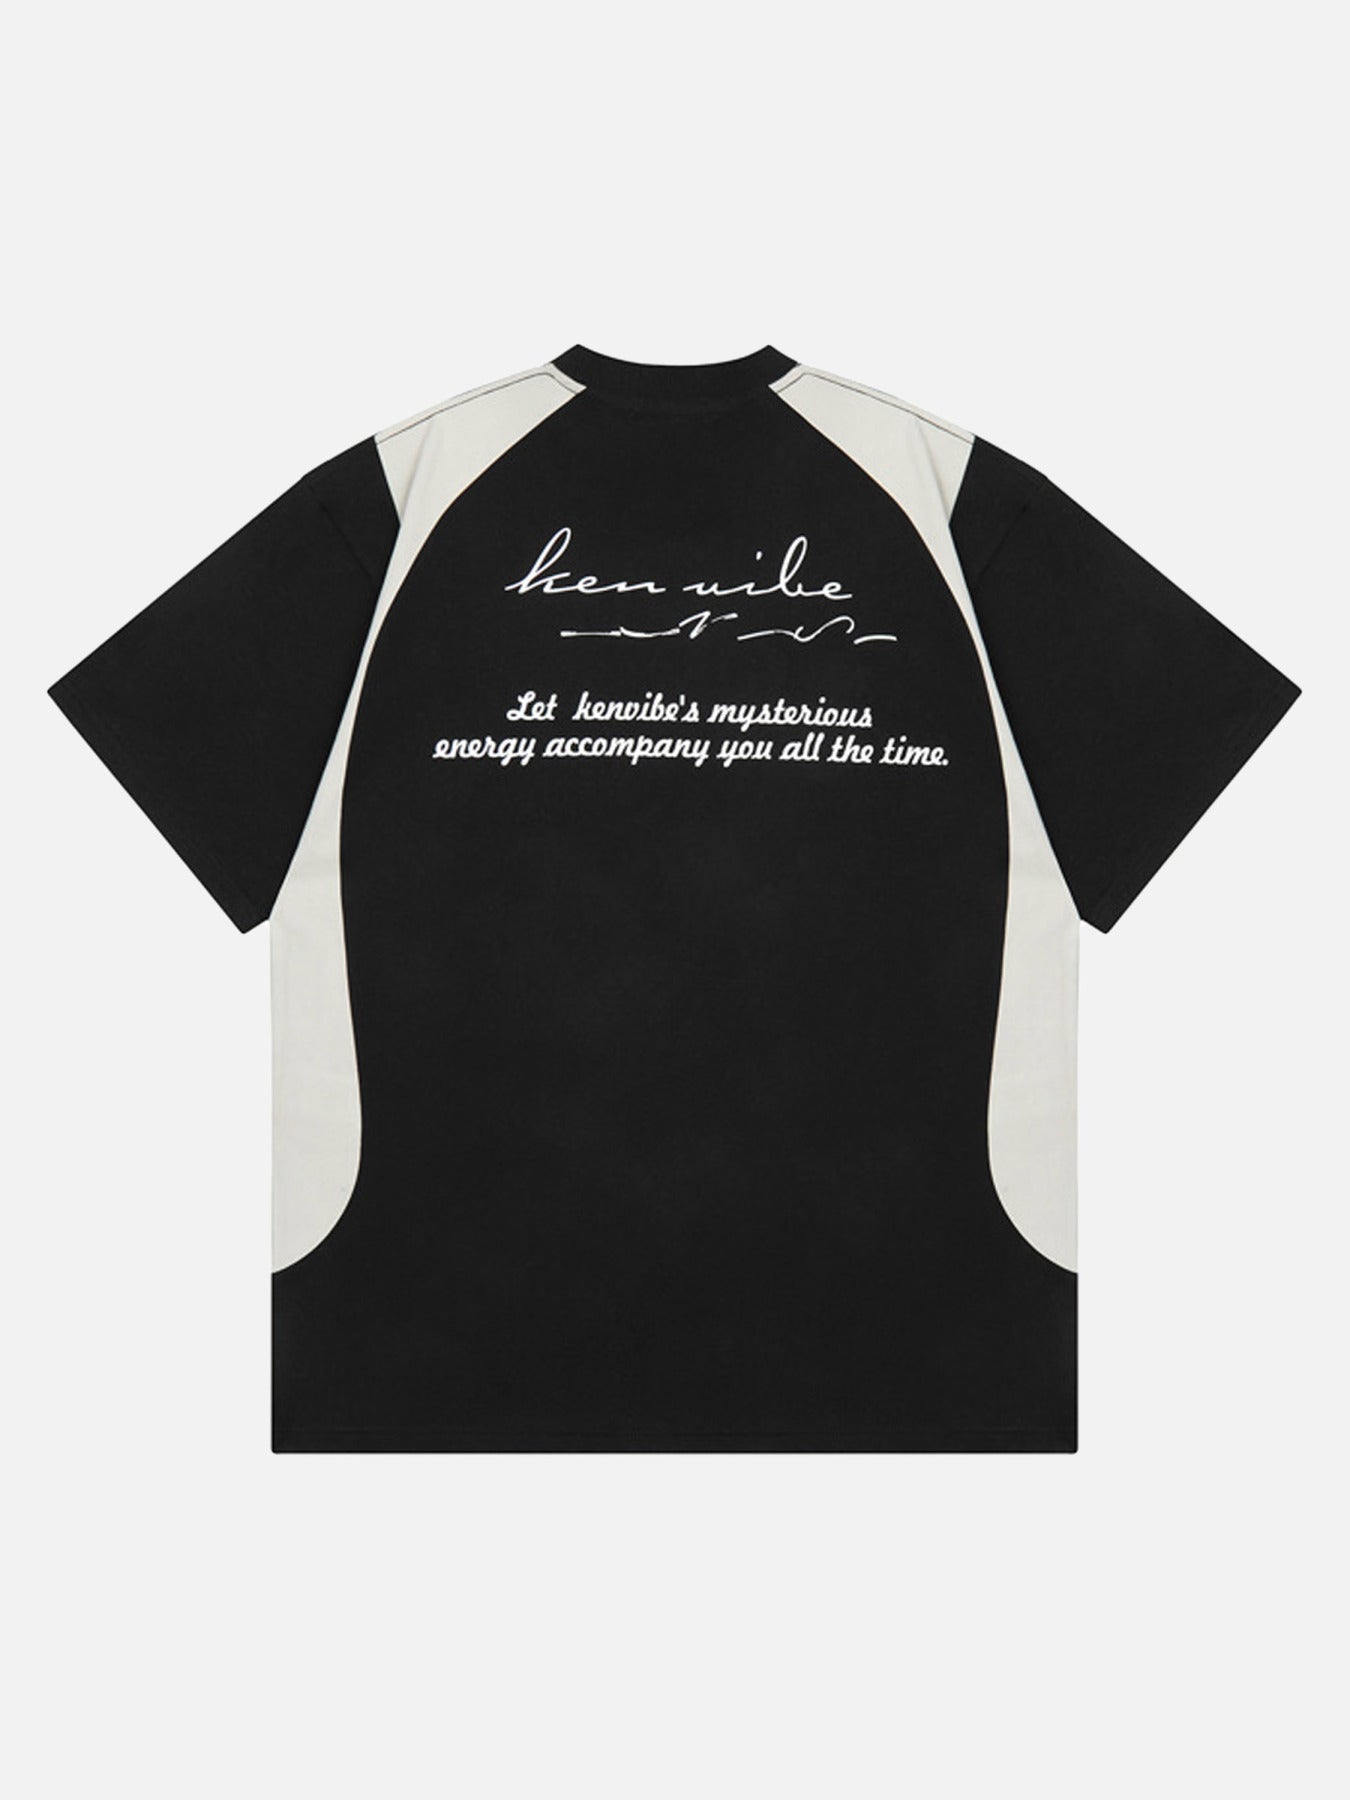 The Supermade Biker Style Letter Print Short-sleeved T-shirt